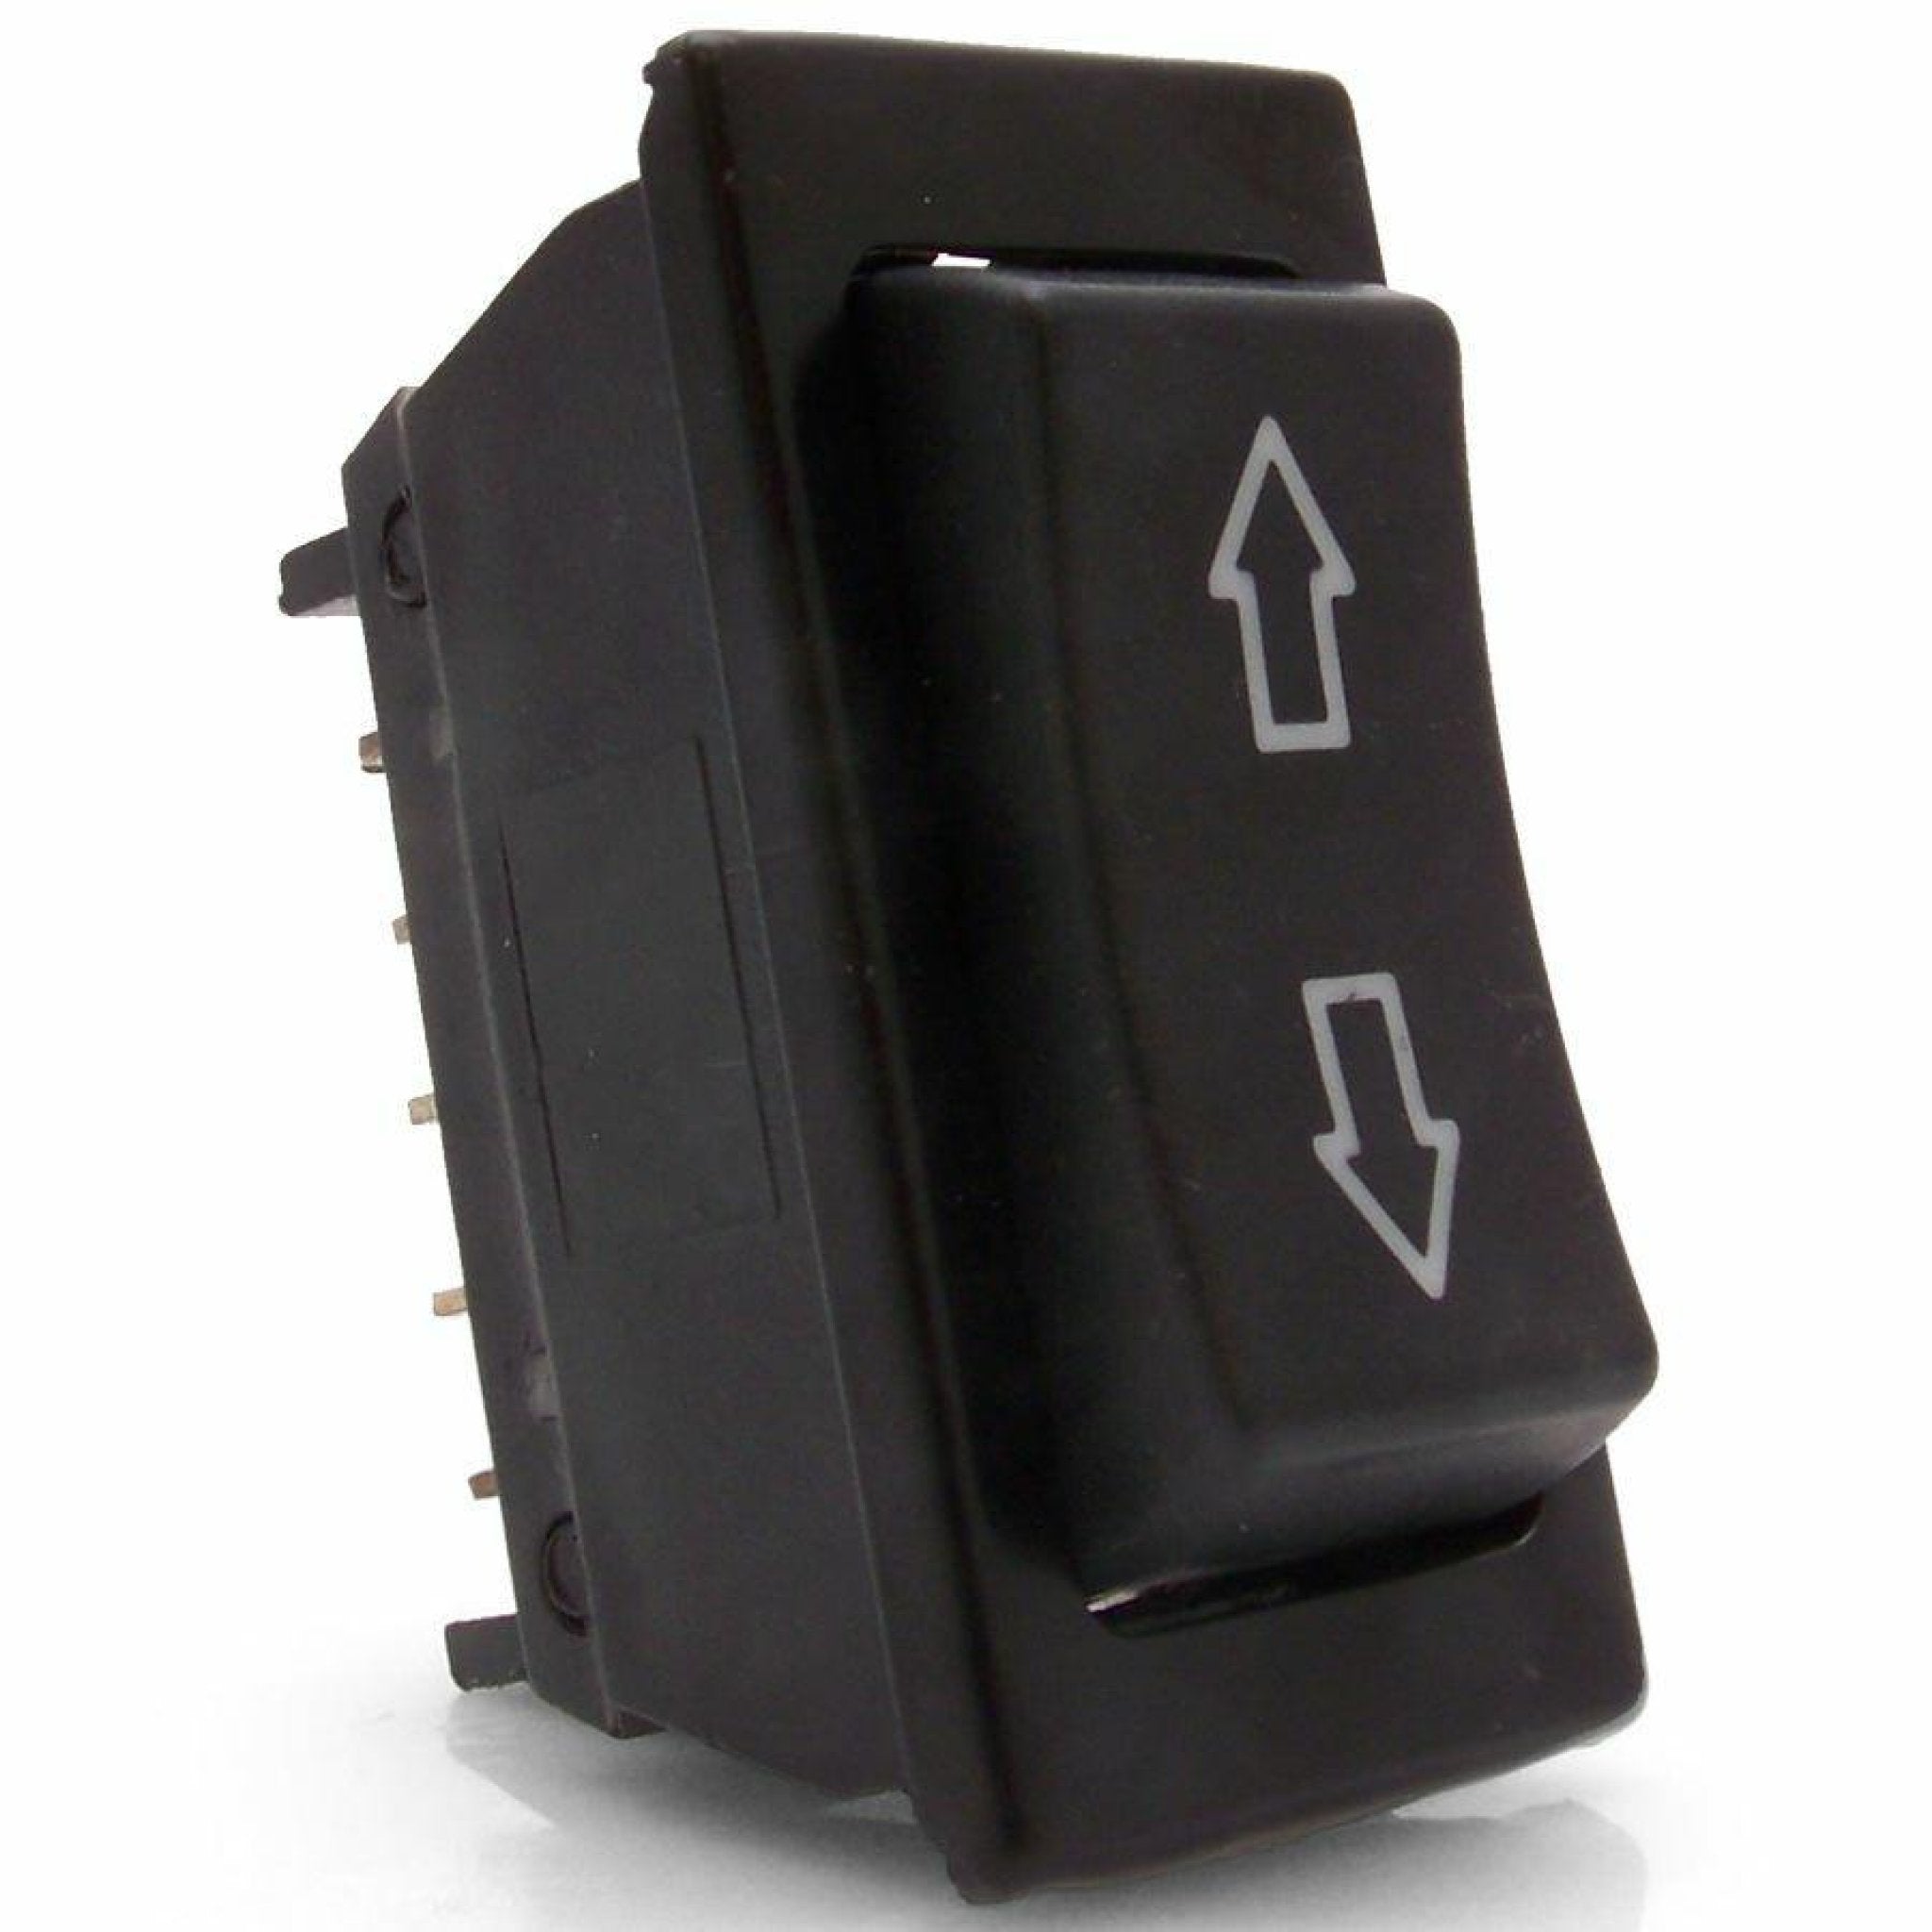 Kit de cubierta de lona para control remoto de servicio pesado con 2 actuadores lineales e interruptor